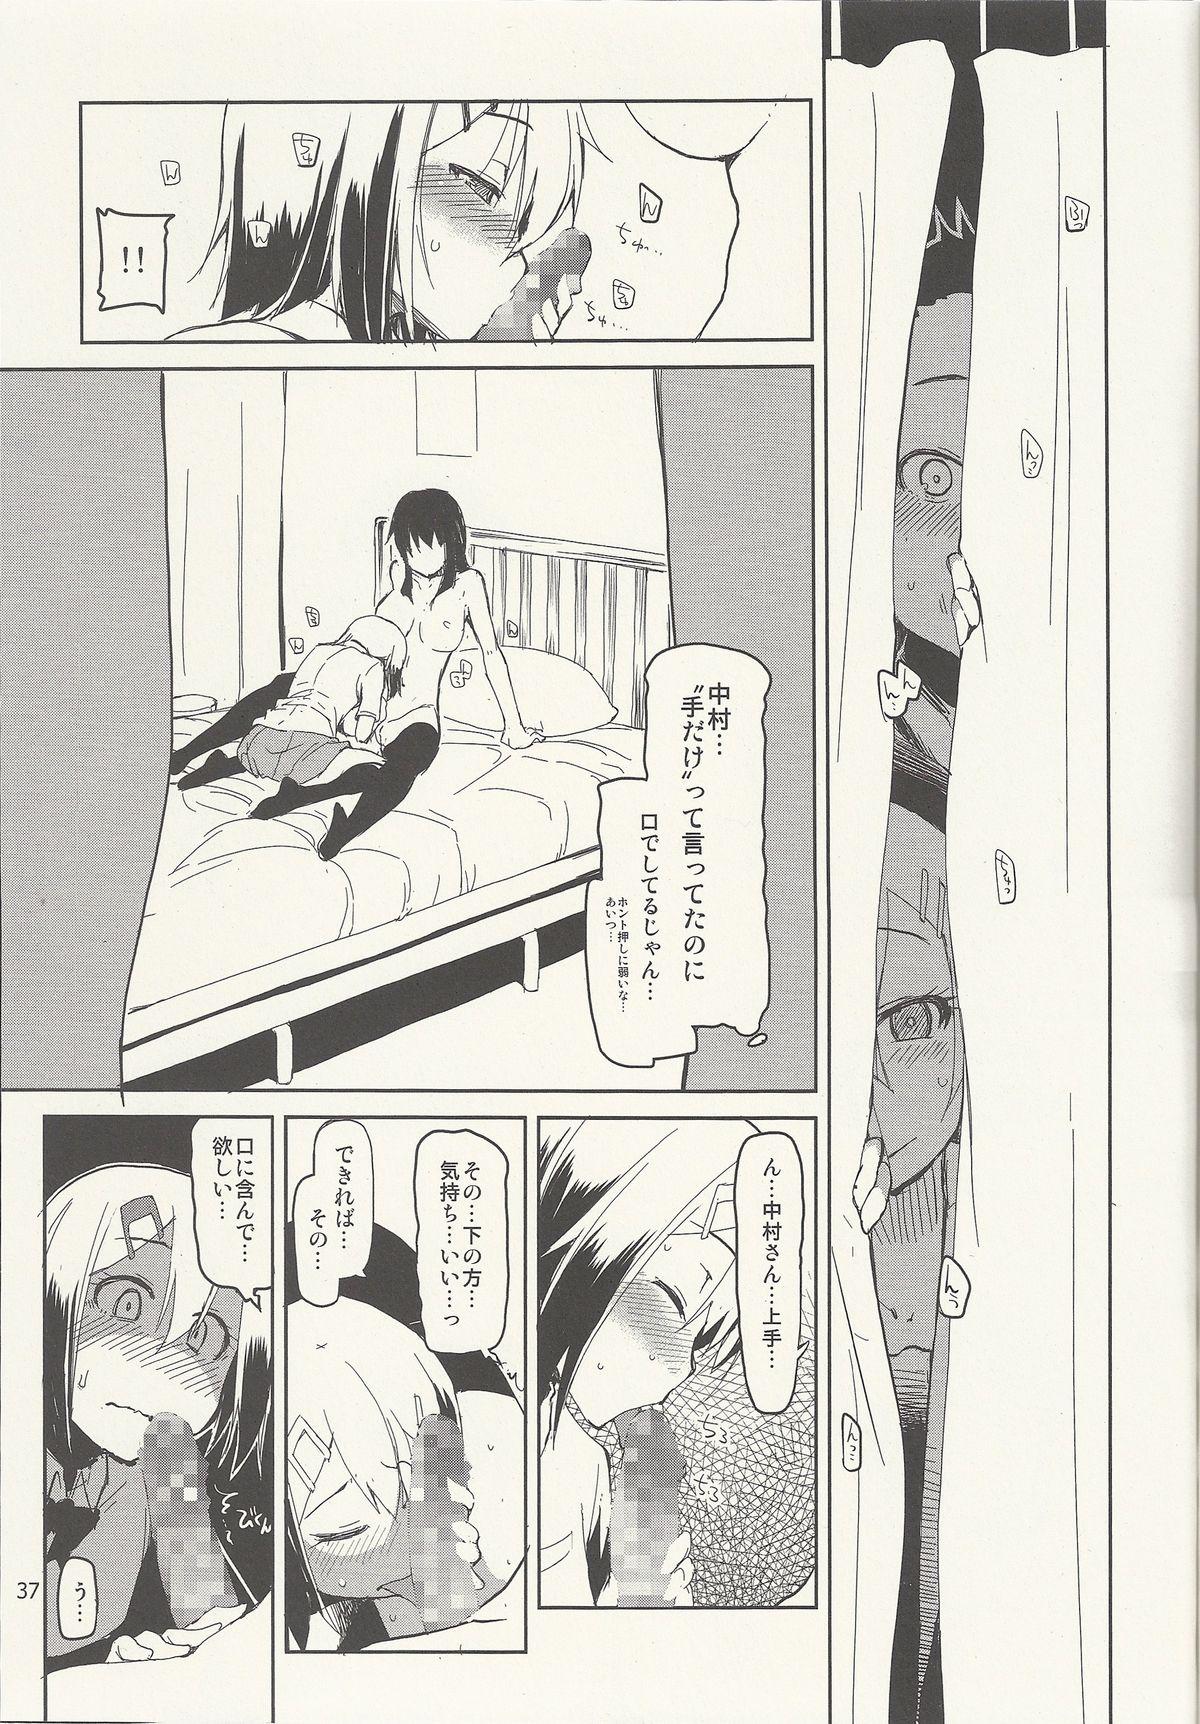 Natsuzuka-san no Himitsu. Vol. 6 Kanketsu Hen 38